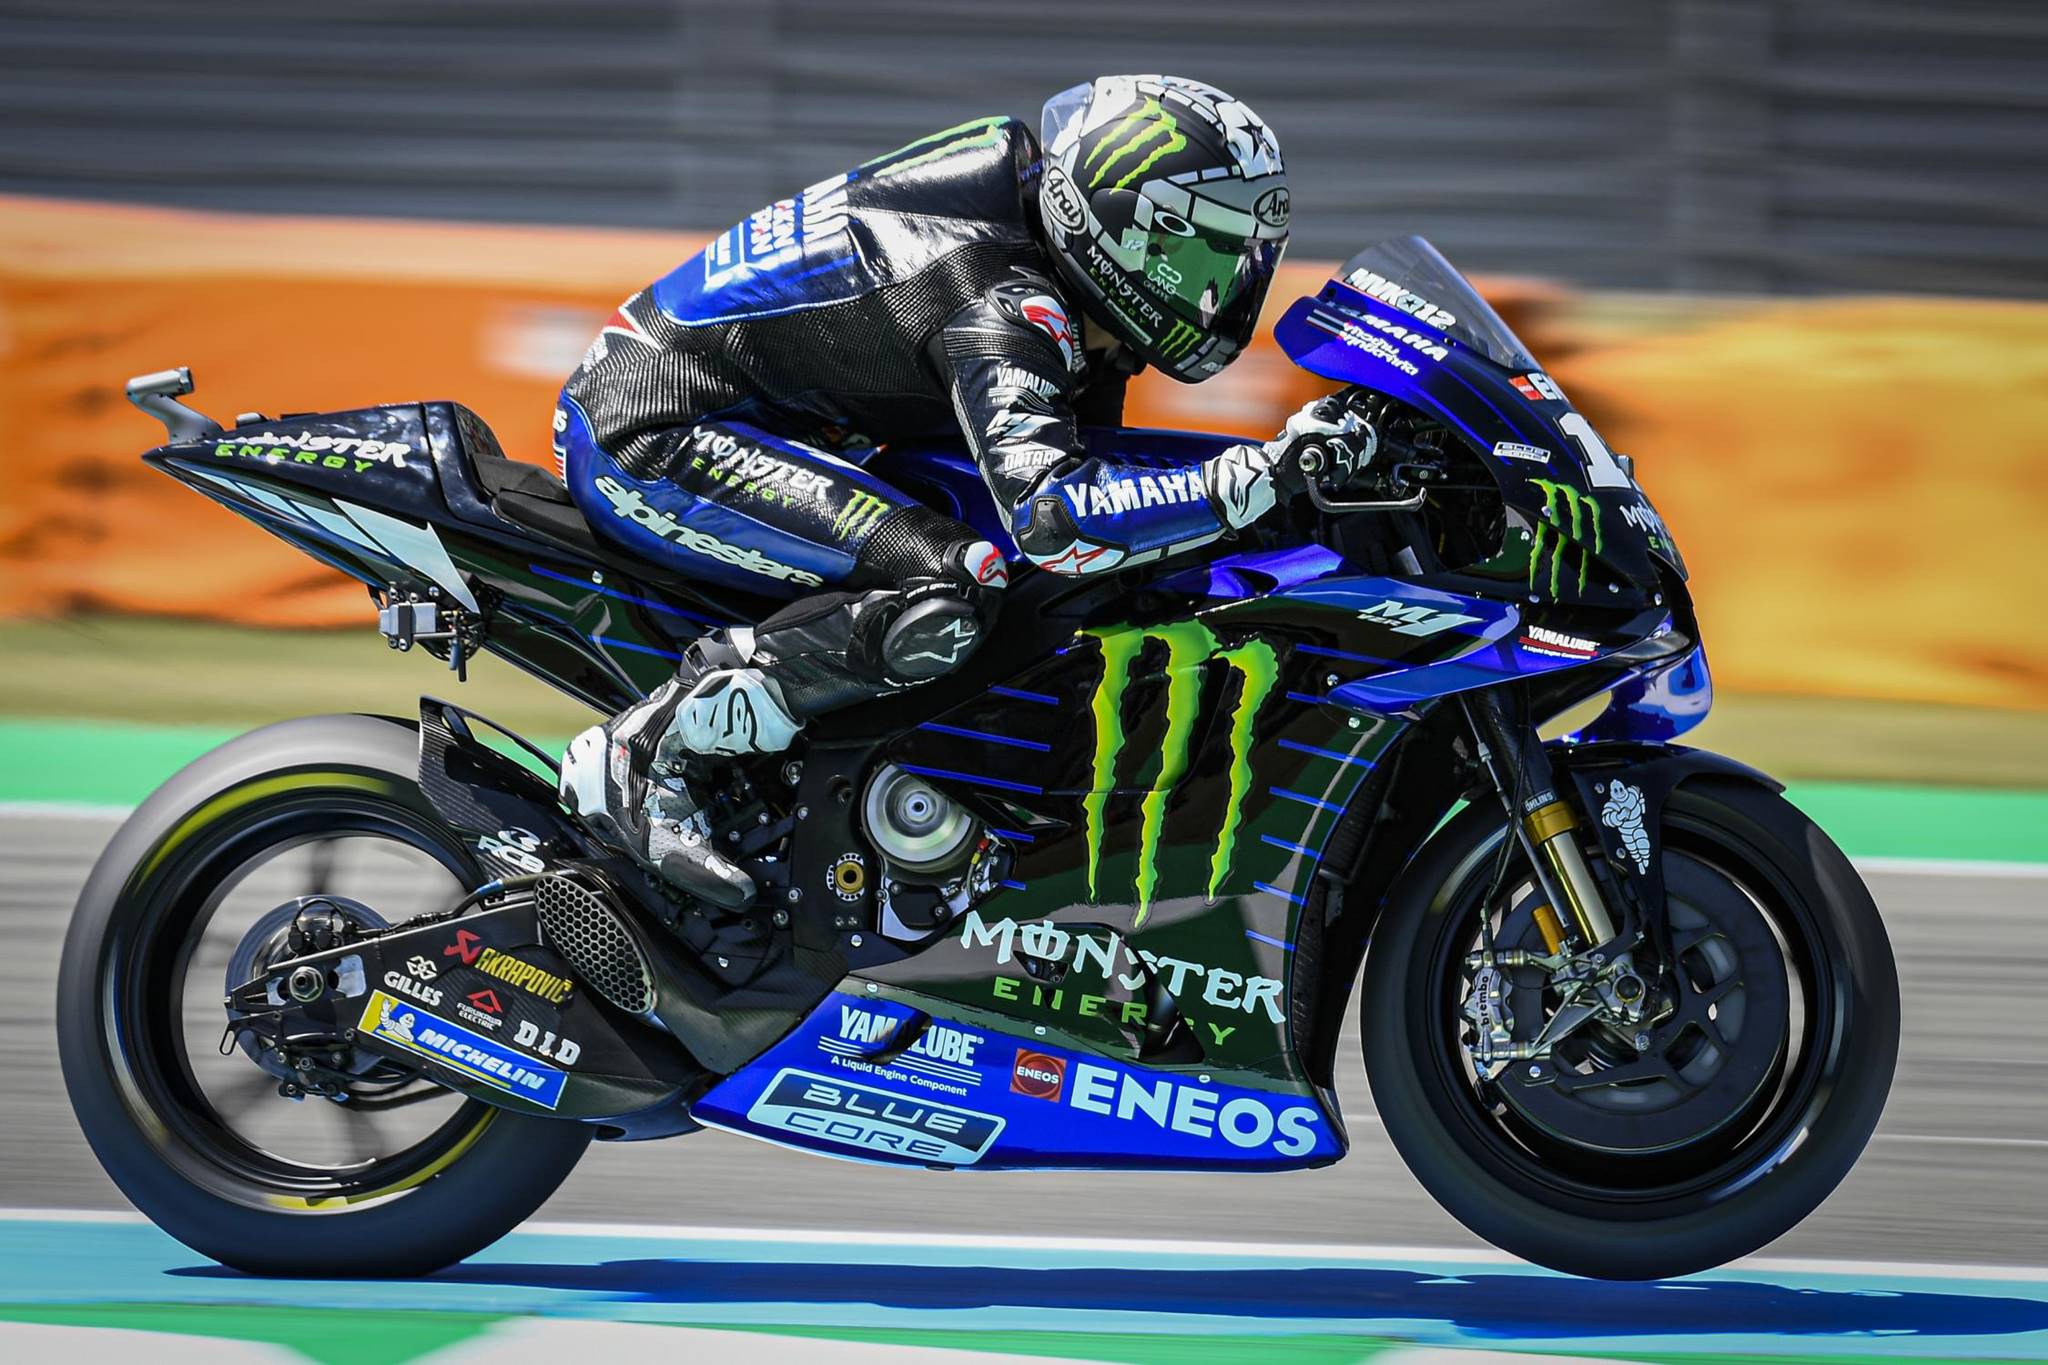 #MotoGP19: Vinales giúp Yamaha có chiến thắng chặng đầu tiên trong mùa, Marquez vững ngôi đầu